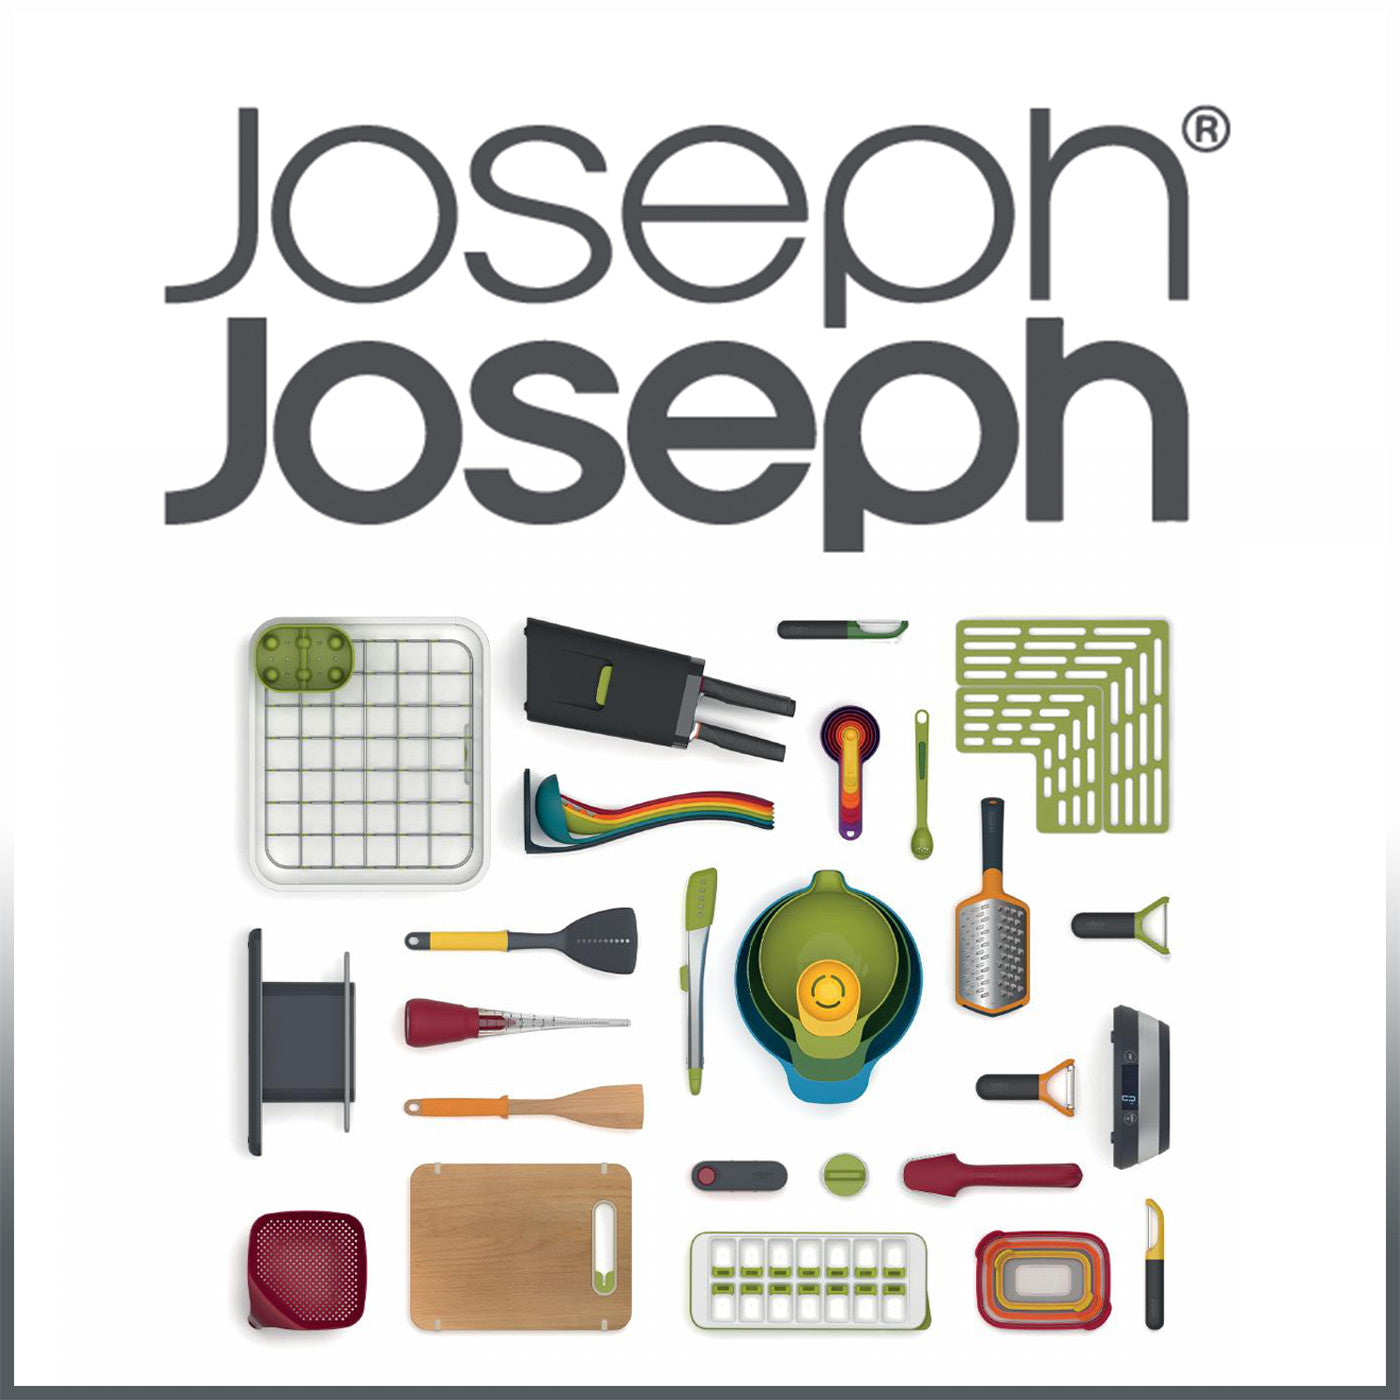 Joseph Joseph, la marca de utensilios de cocina que arrasa en